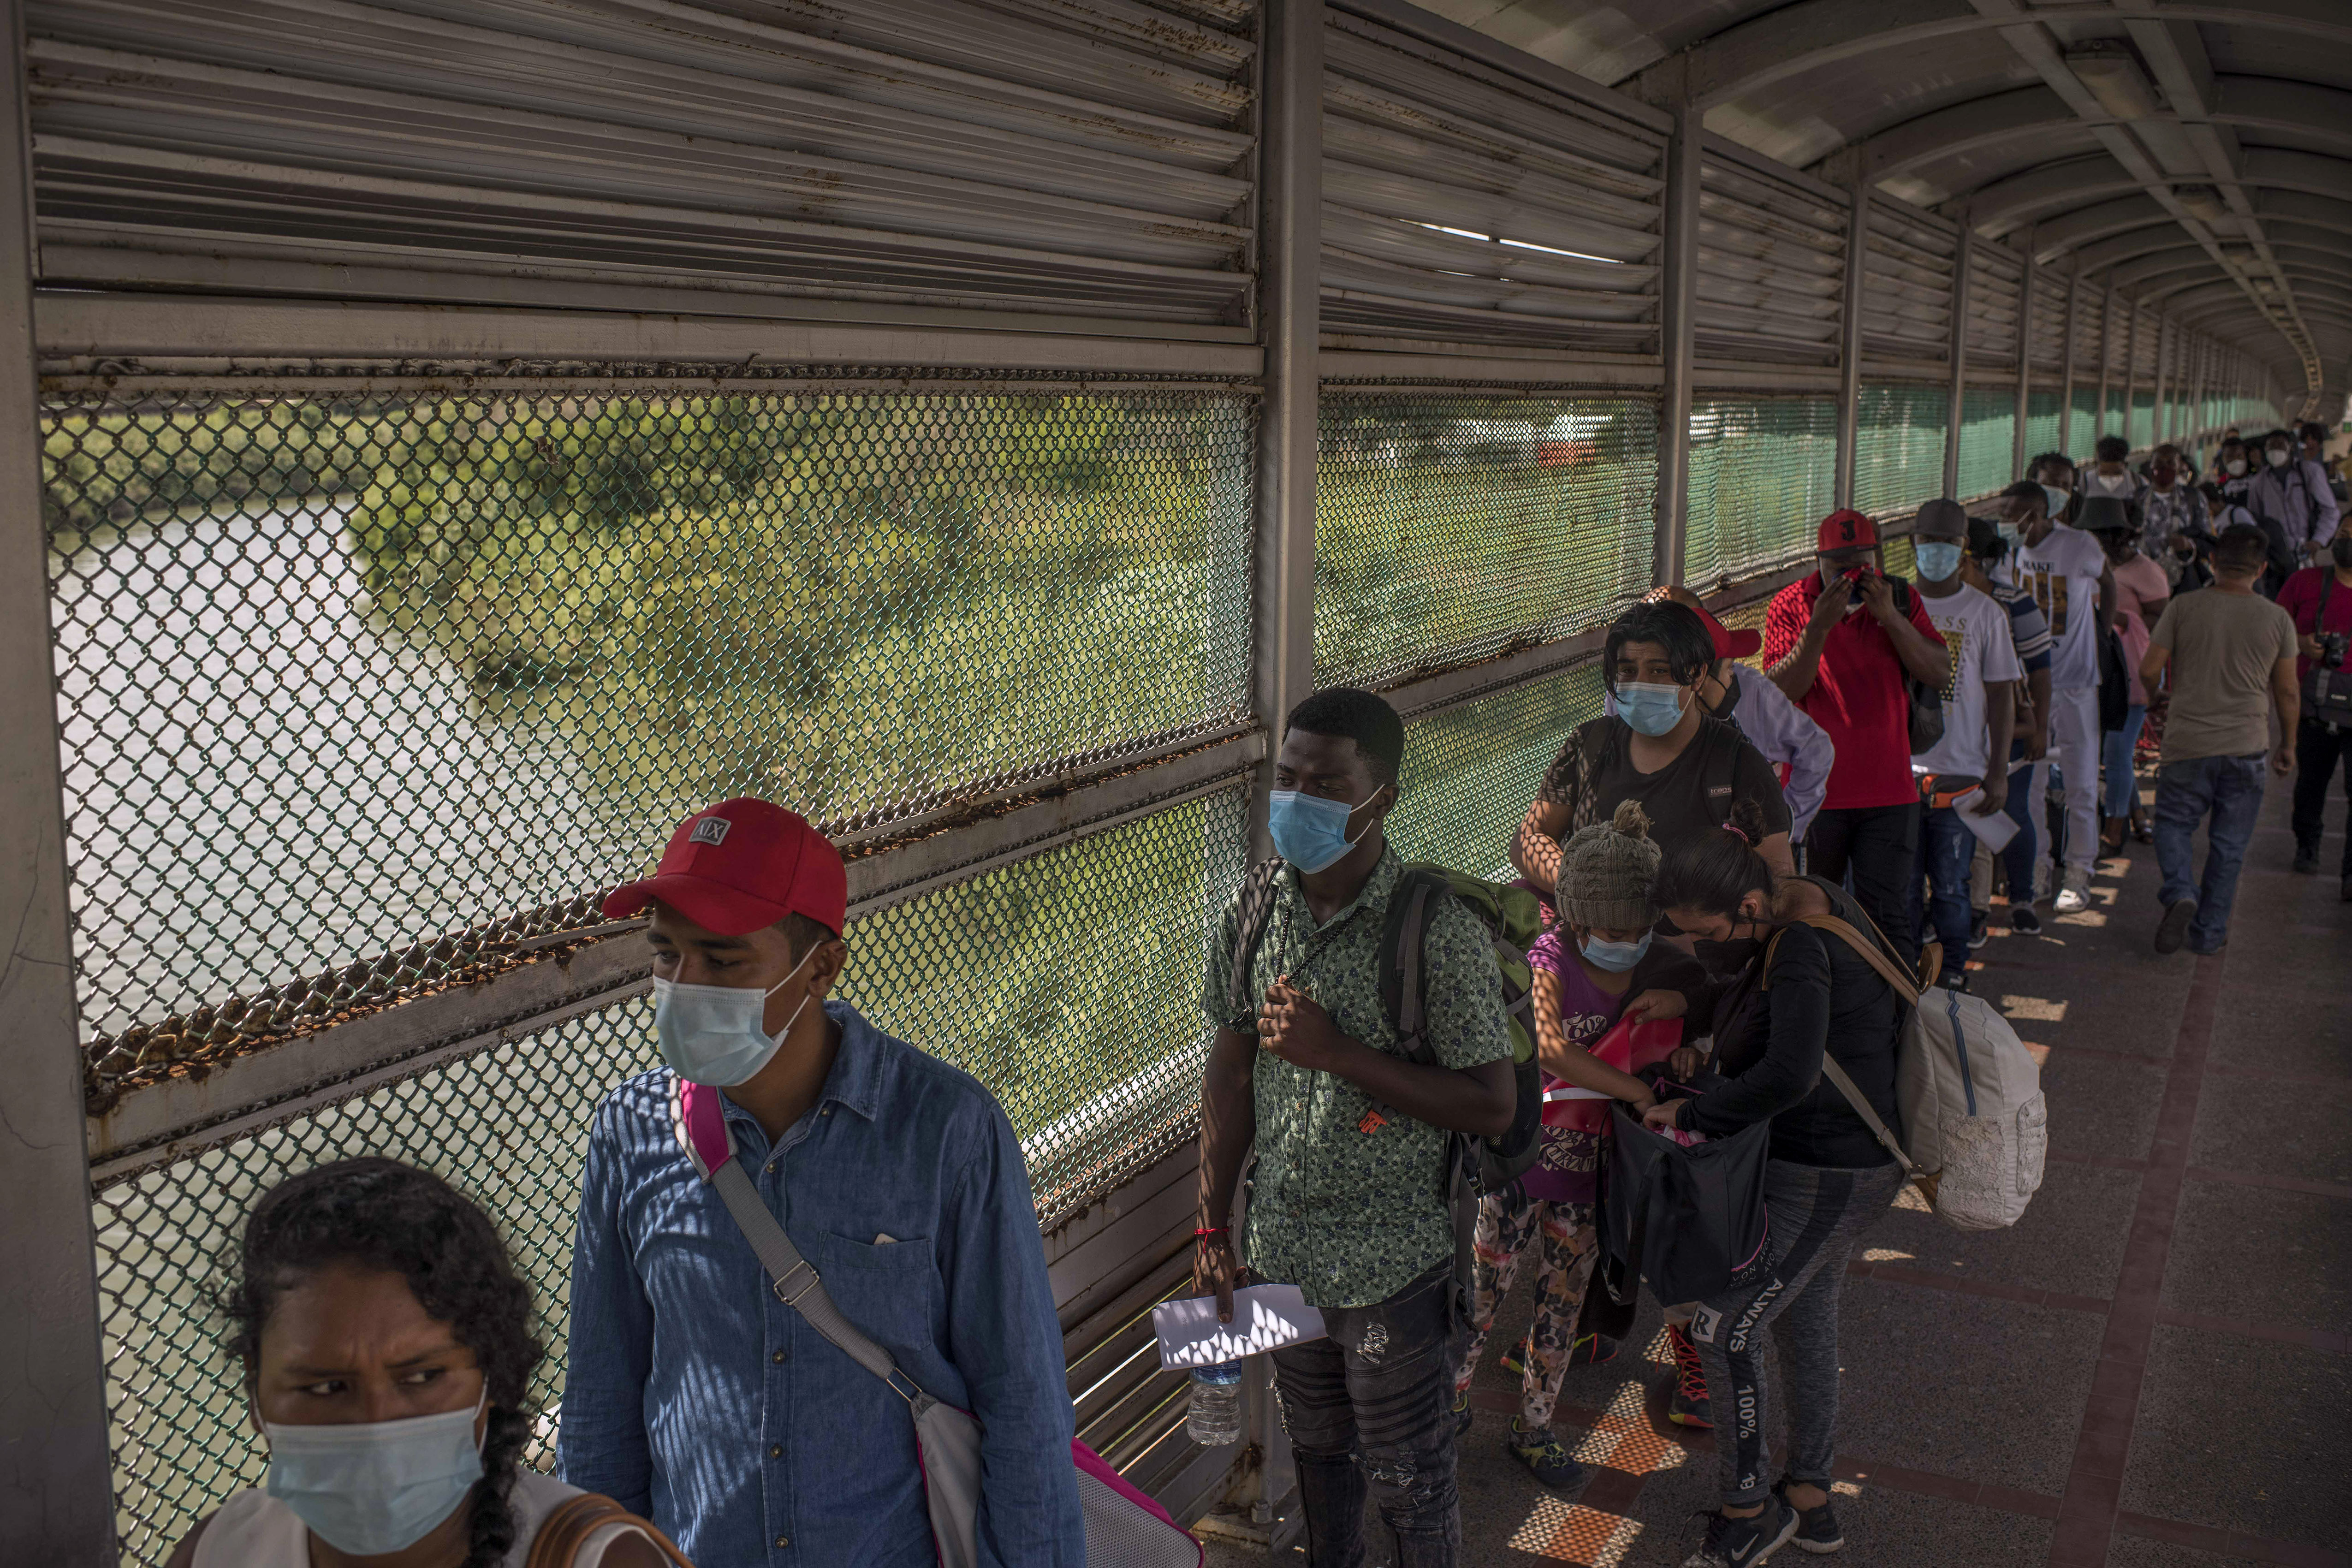 Personas que migran, en su mayoría desde Centroamérica y Haití, esperan en el Puente Internacional en Matamoros, México, para ingresar a Estados Unidos para solicitar asilo en agosto de este año. (Foto Prensa Libre: Daniele Volpe/New York Times)